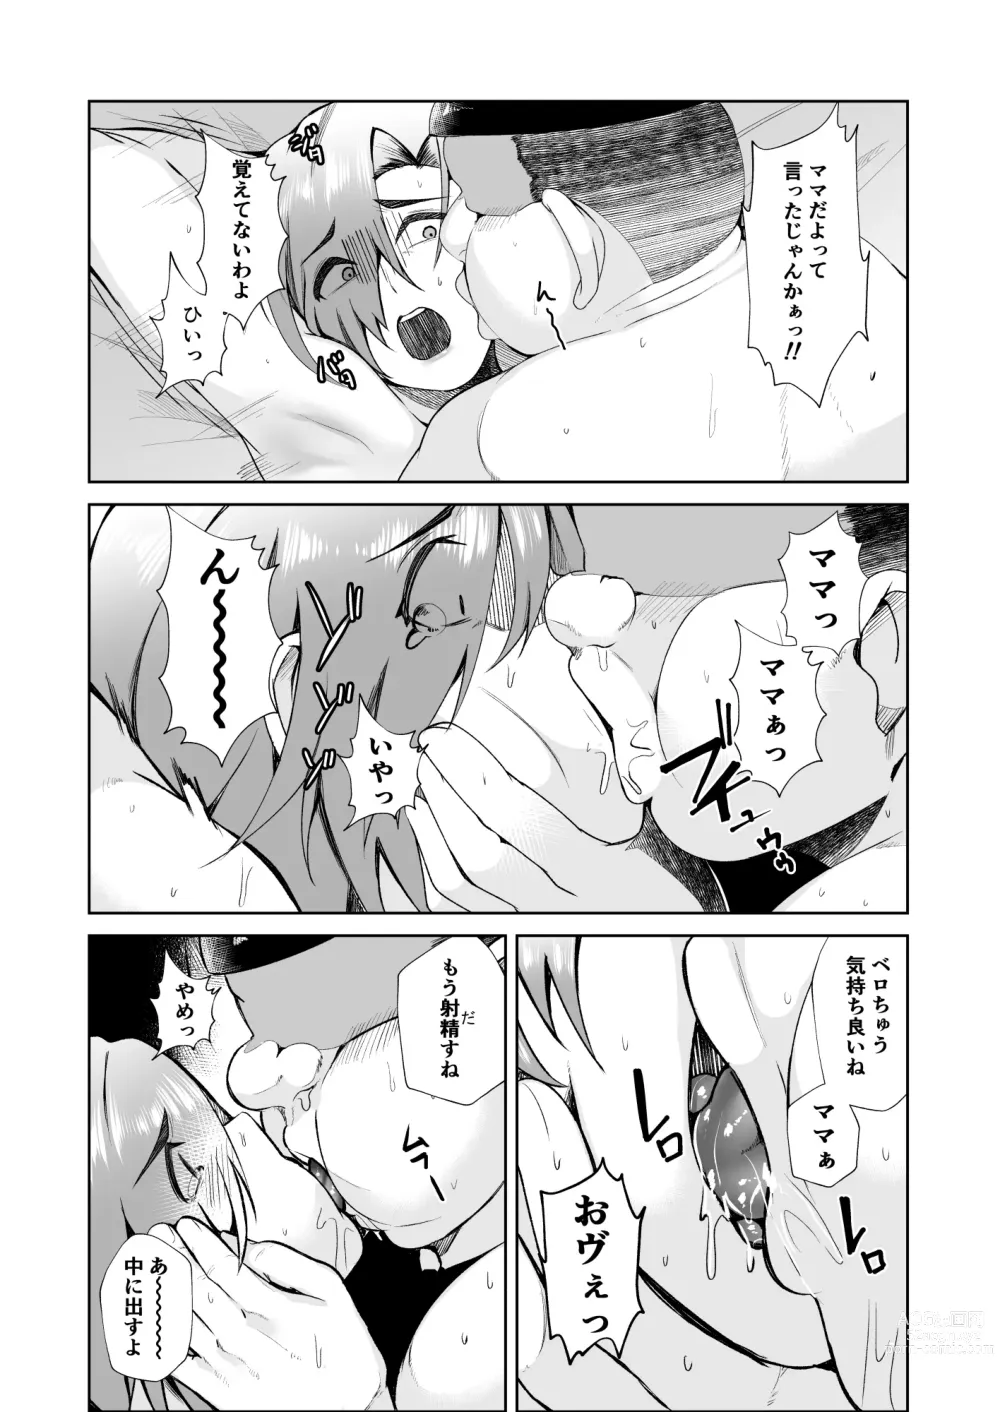 Page 22 of doujinshi Ojisanga shakinwo tsumano karadade hotenshitehoshiito iwaretanode kaidakushita hanashi